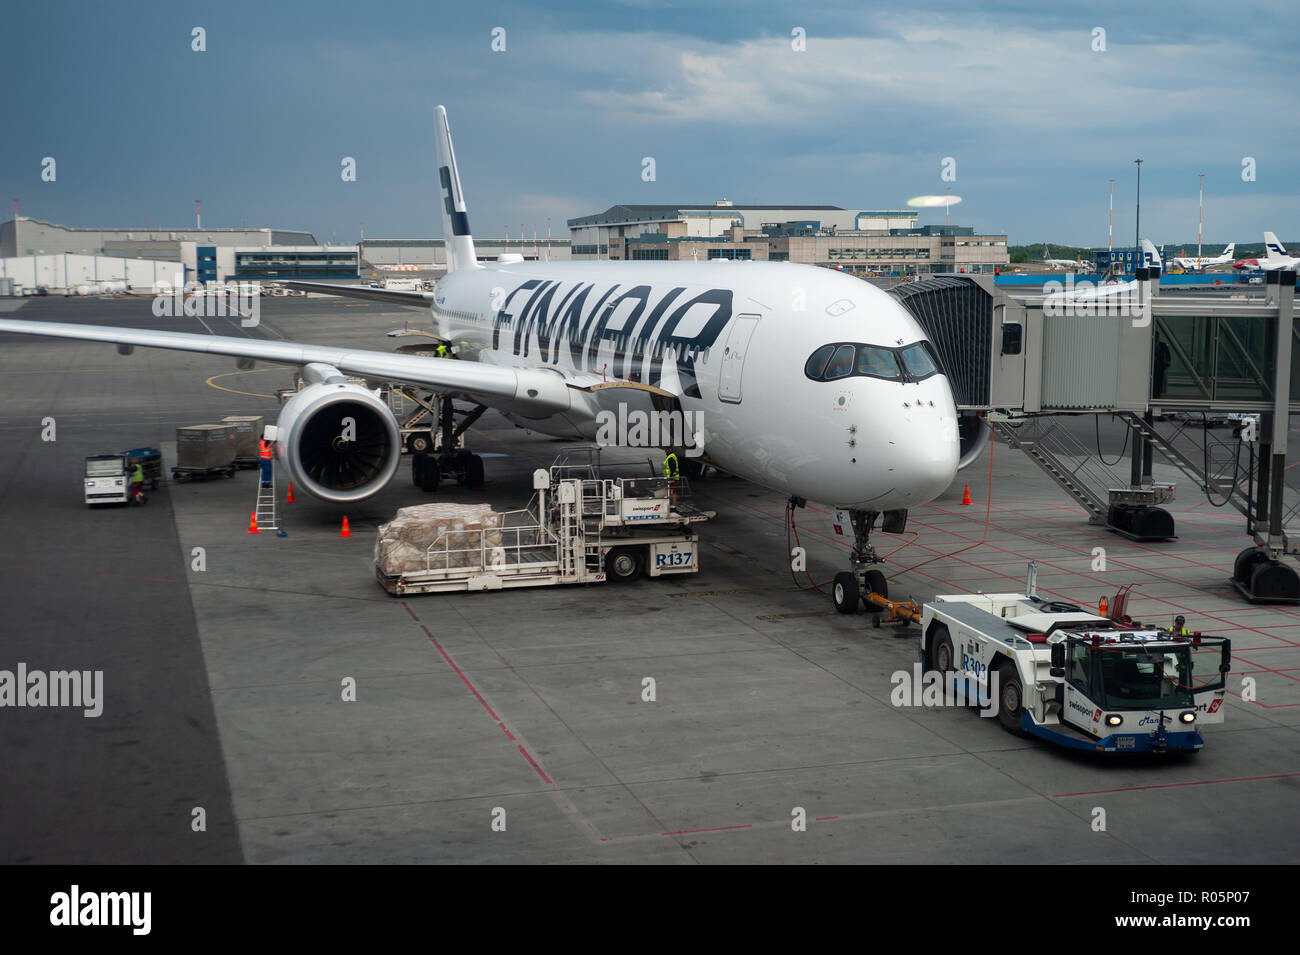 04.06.2018 - Helsinki, Finlandia, Europa - un Airbus A350 de Finnair pasajero avión está estacionado en una puerta en el aeropuerto de Helsinki Vantaa. Foto de stock